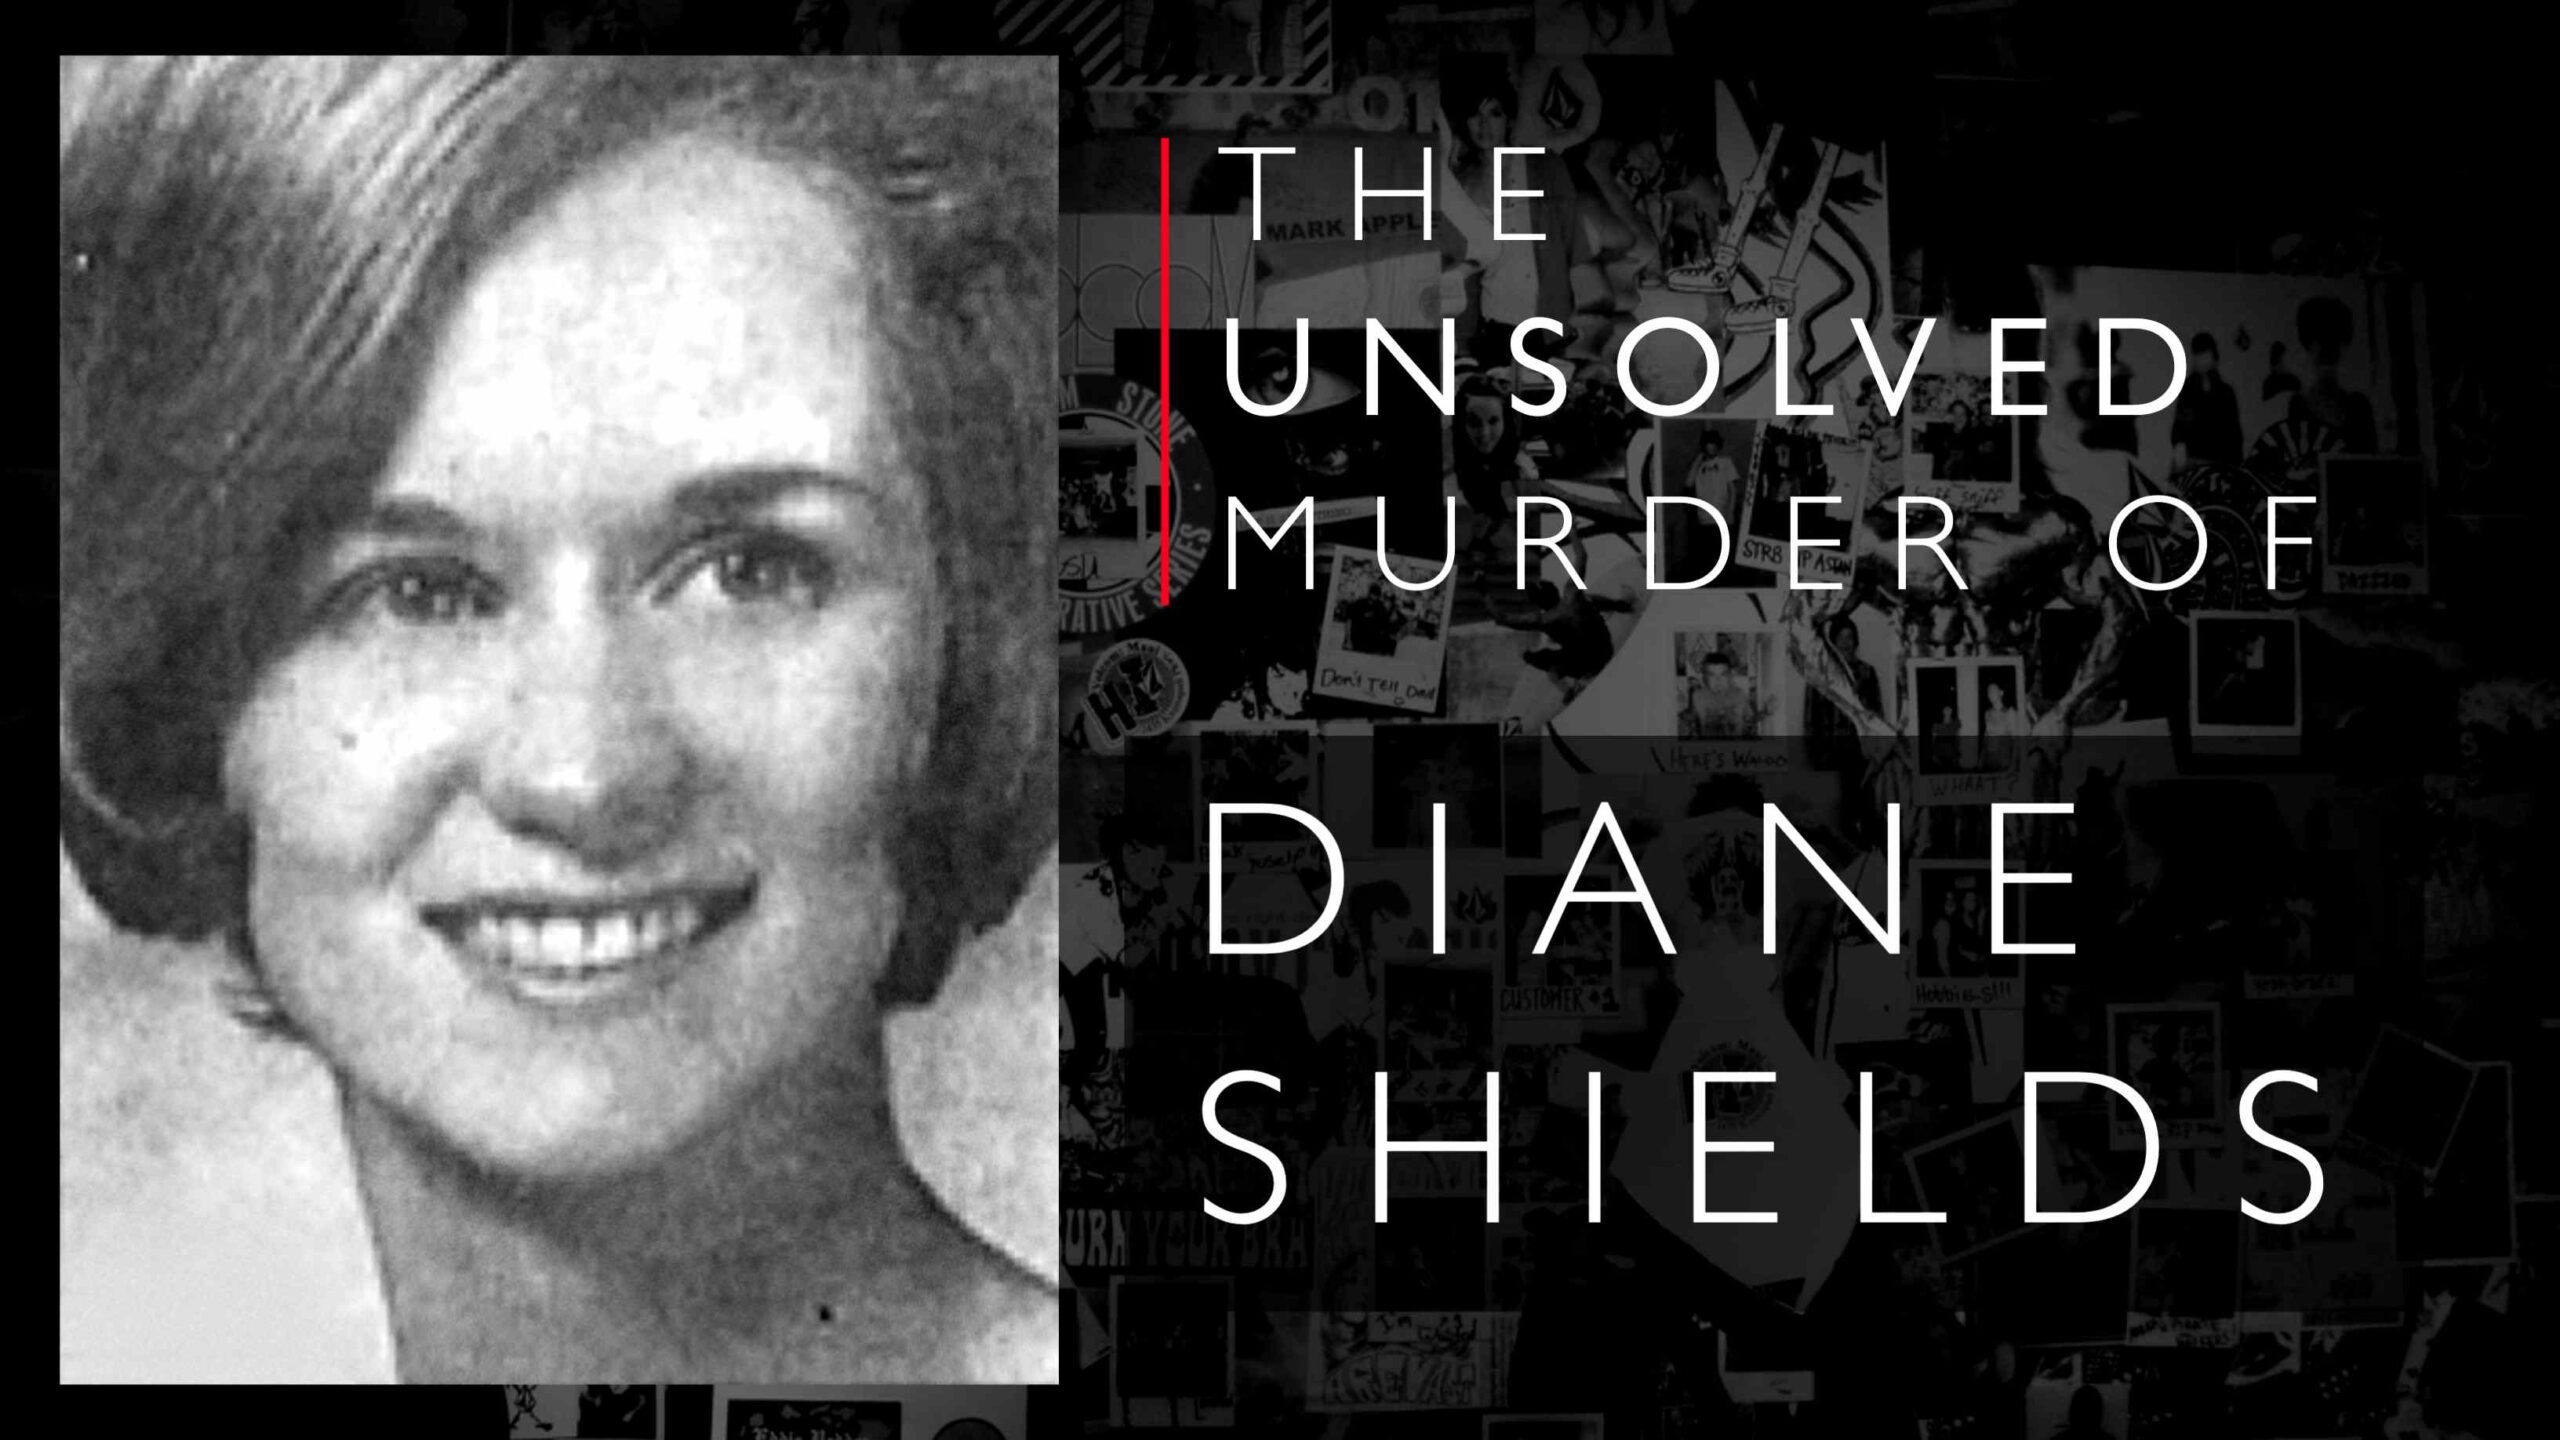 Diane Shields nejakým spôsobom nasledovala po stopách Mary Shotwell Little, potom bola nájdená zavraždená.